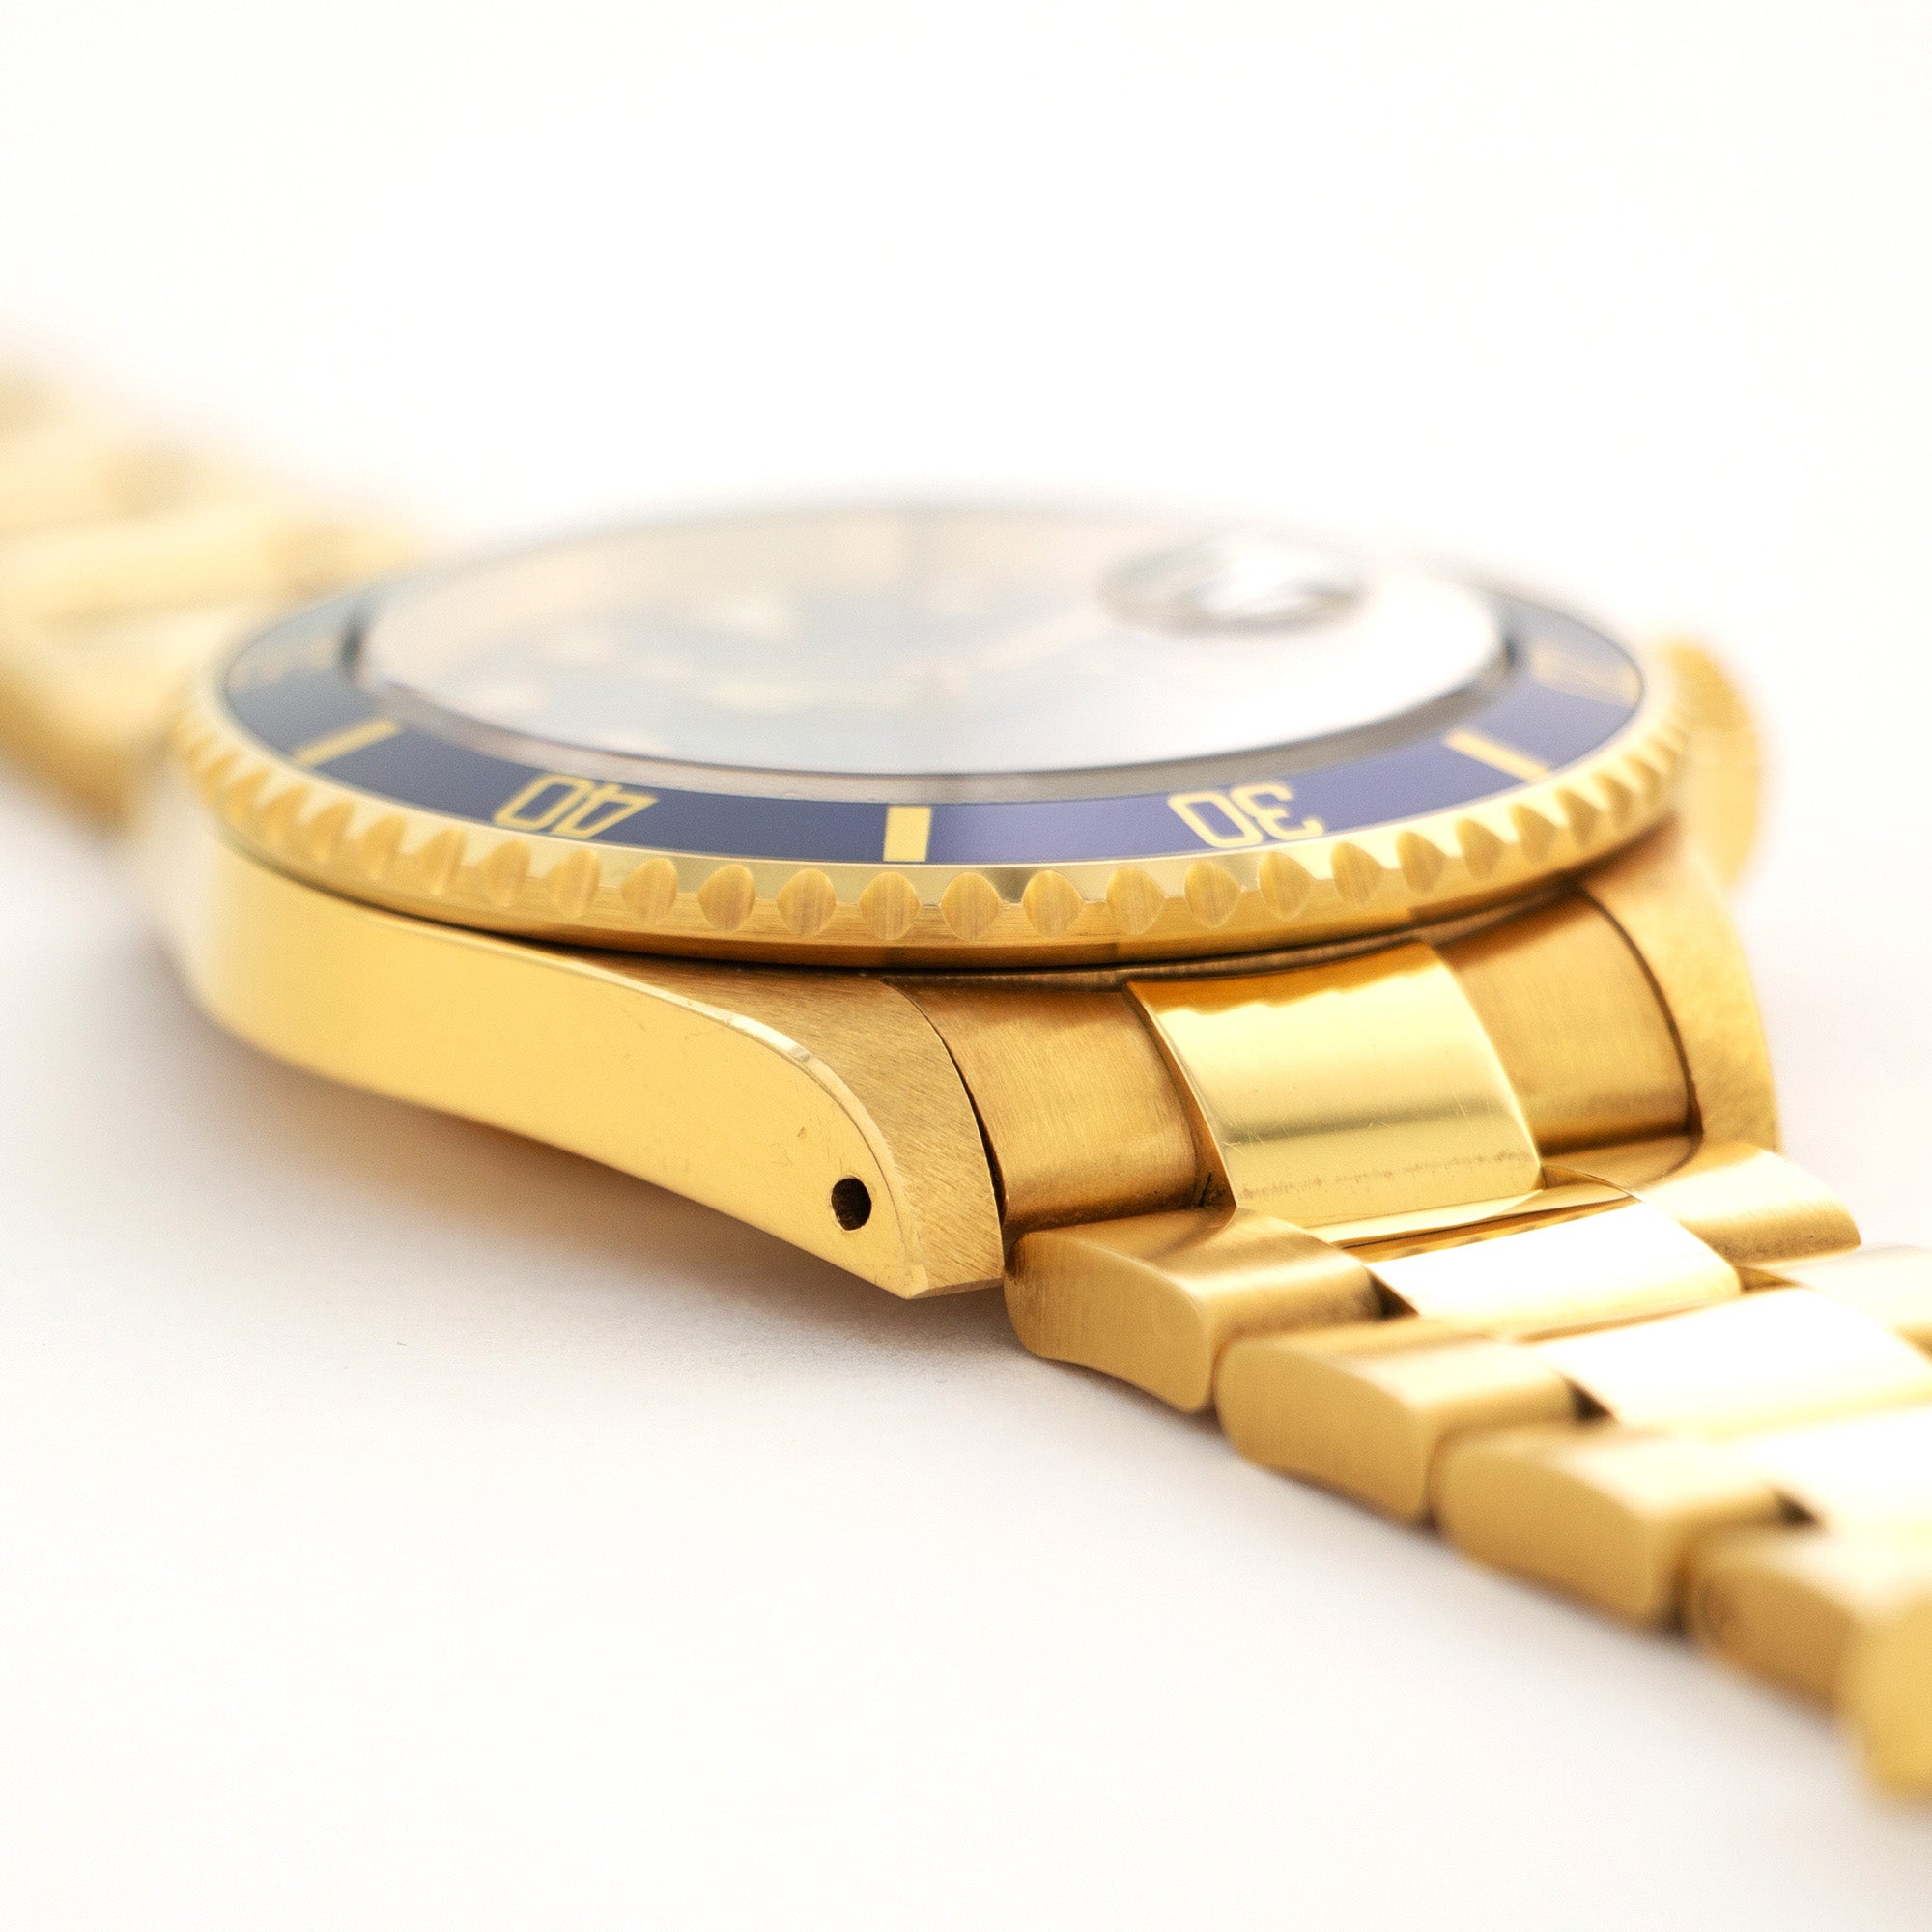 Rolex - Rolex Yellow Gold Submariner Lapis Lazuli Watch Ref. 16618 - The Keystone Watches